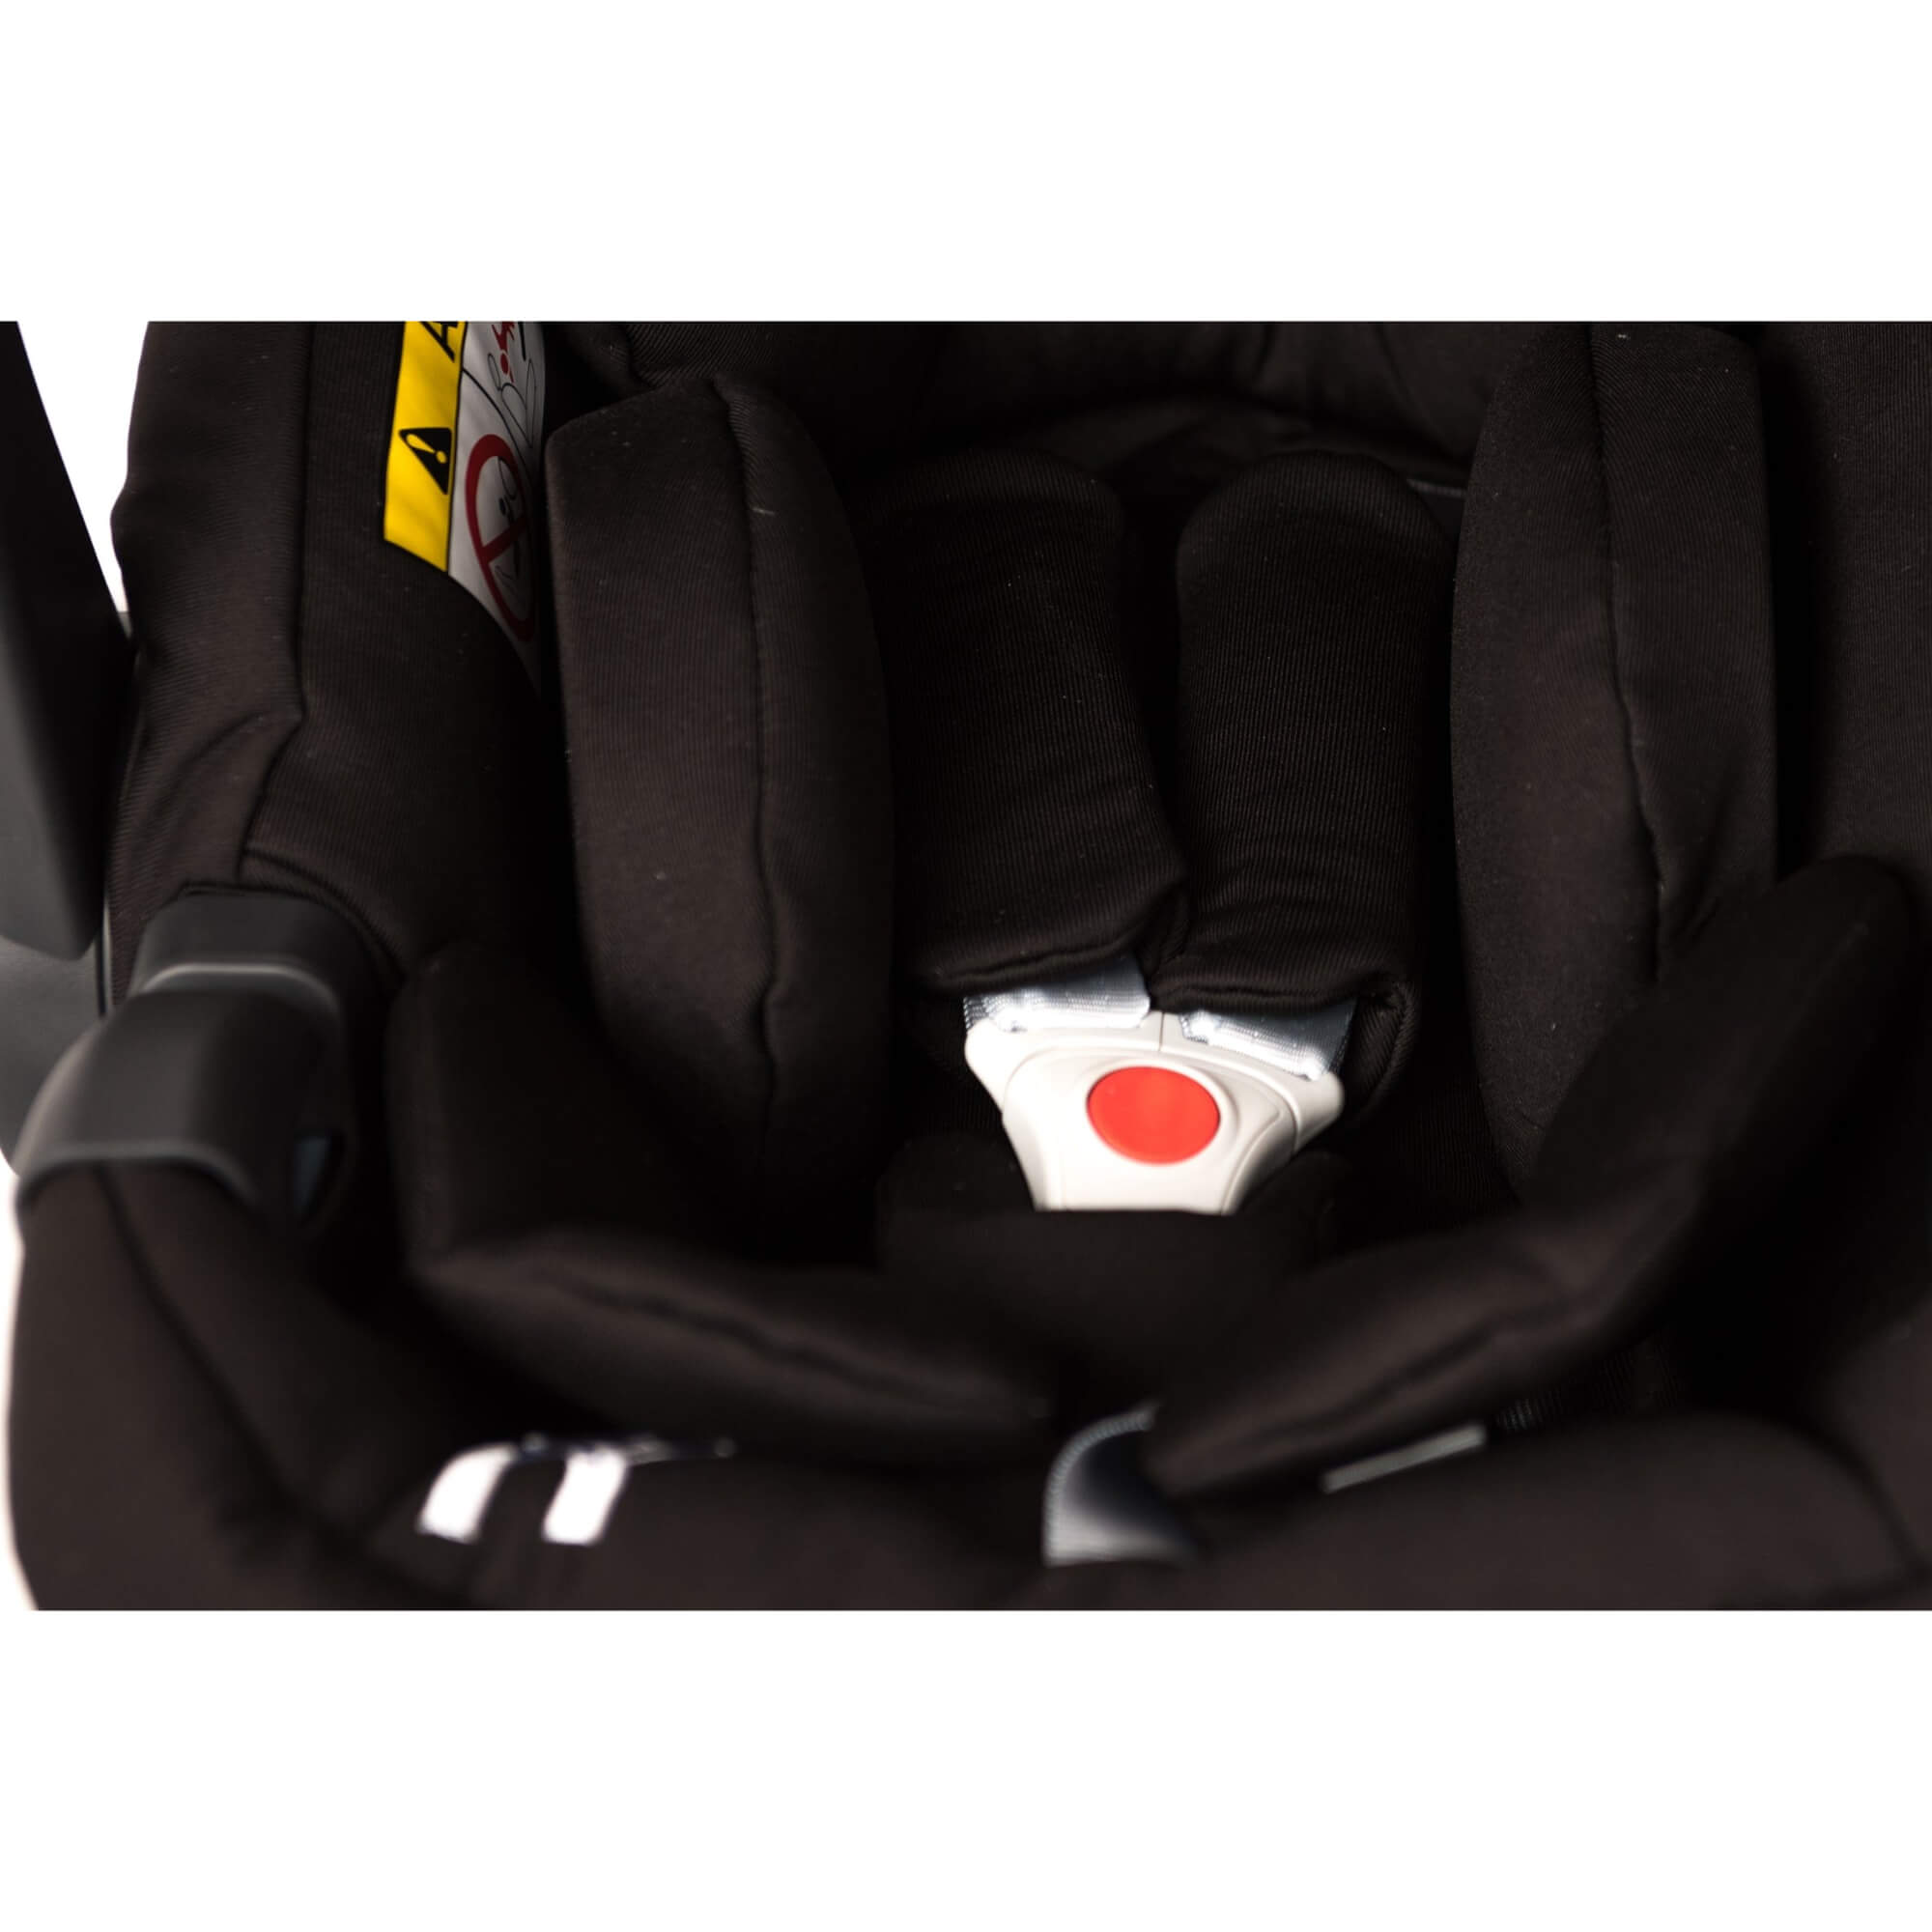 noola car seat isize black baby toddler car seats